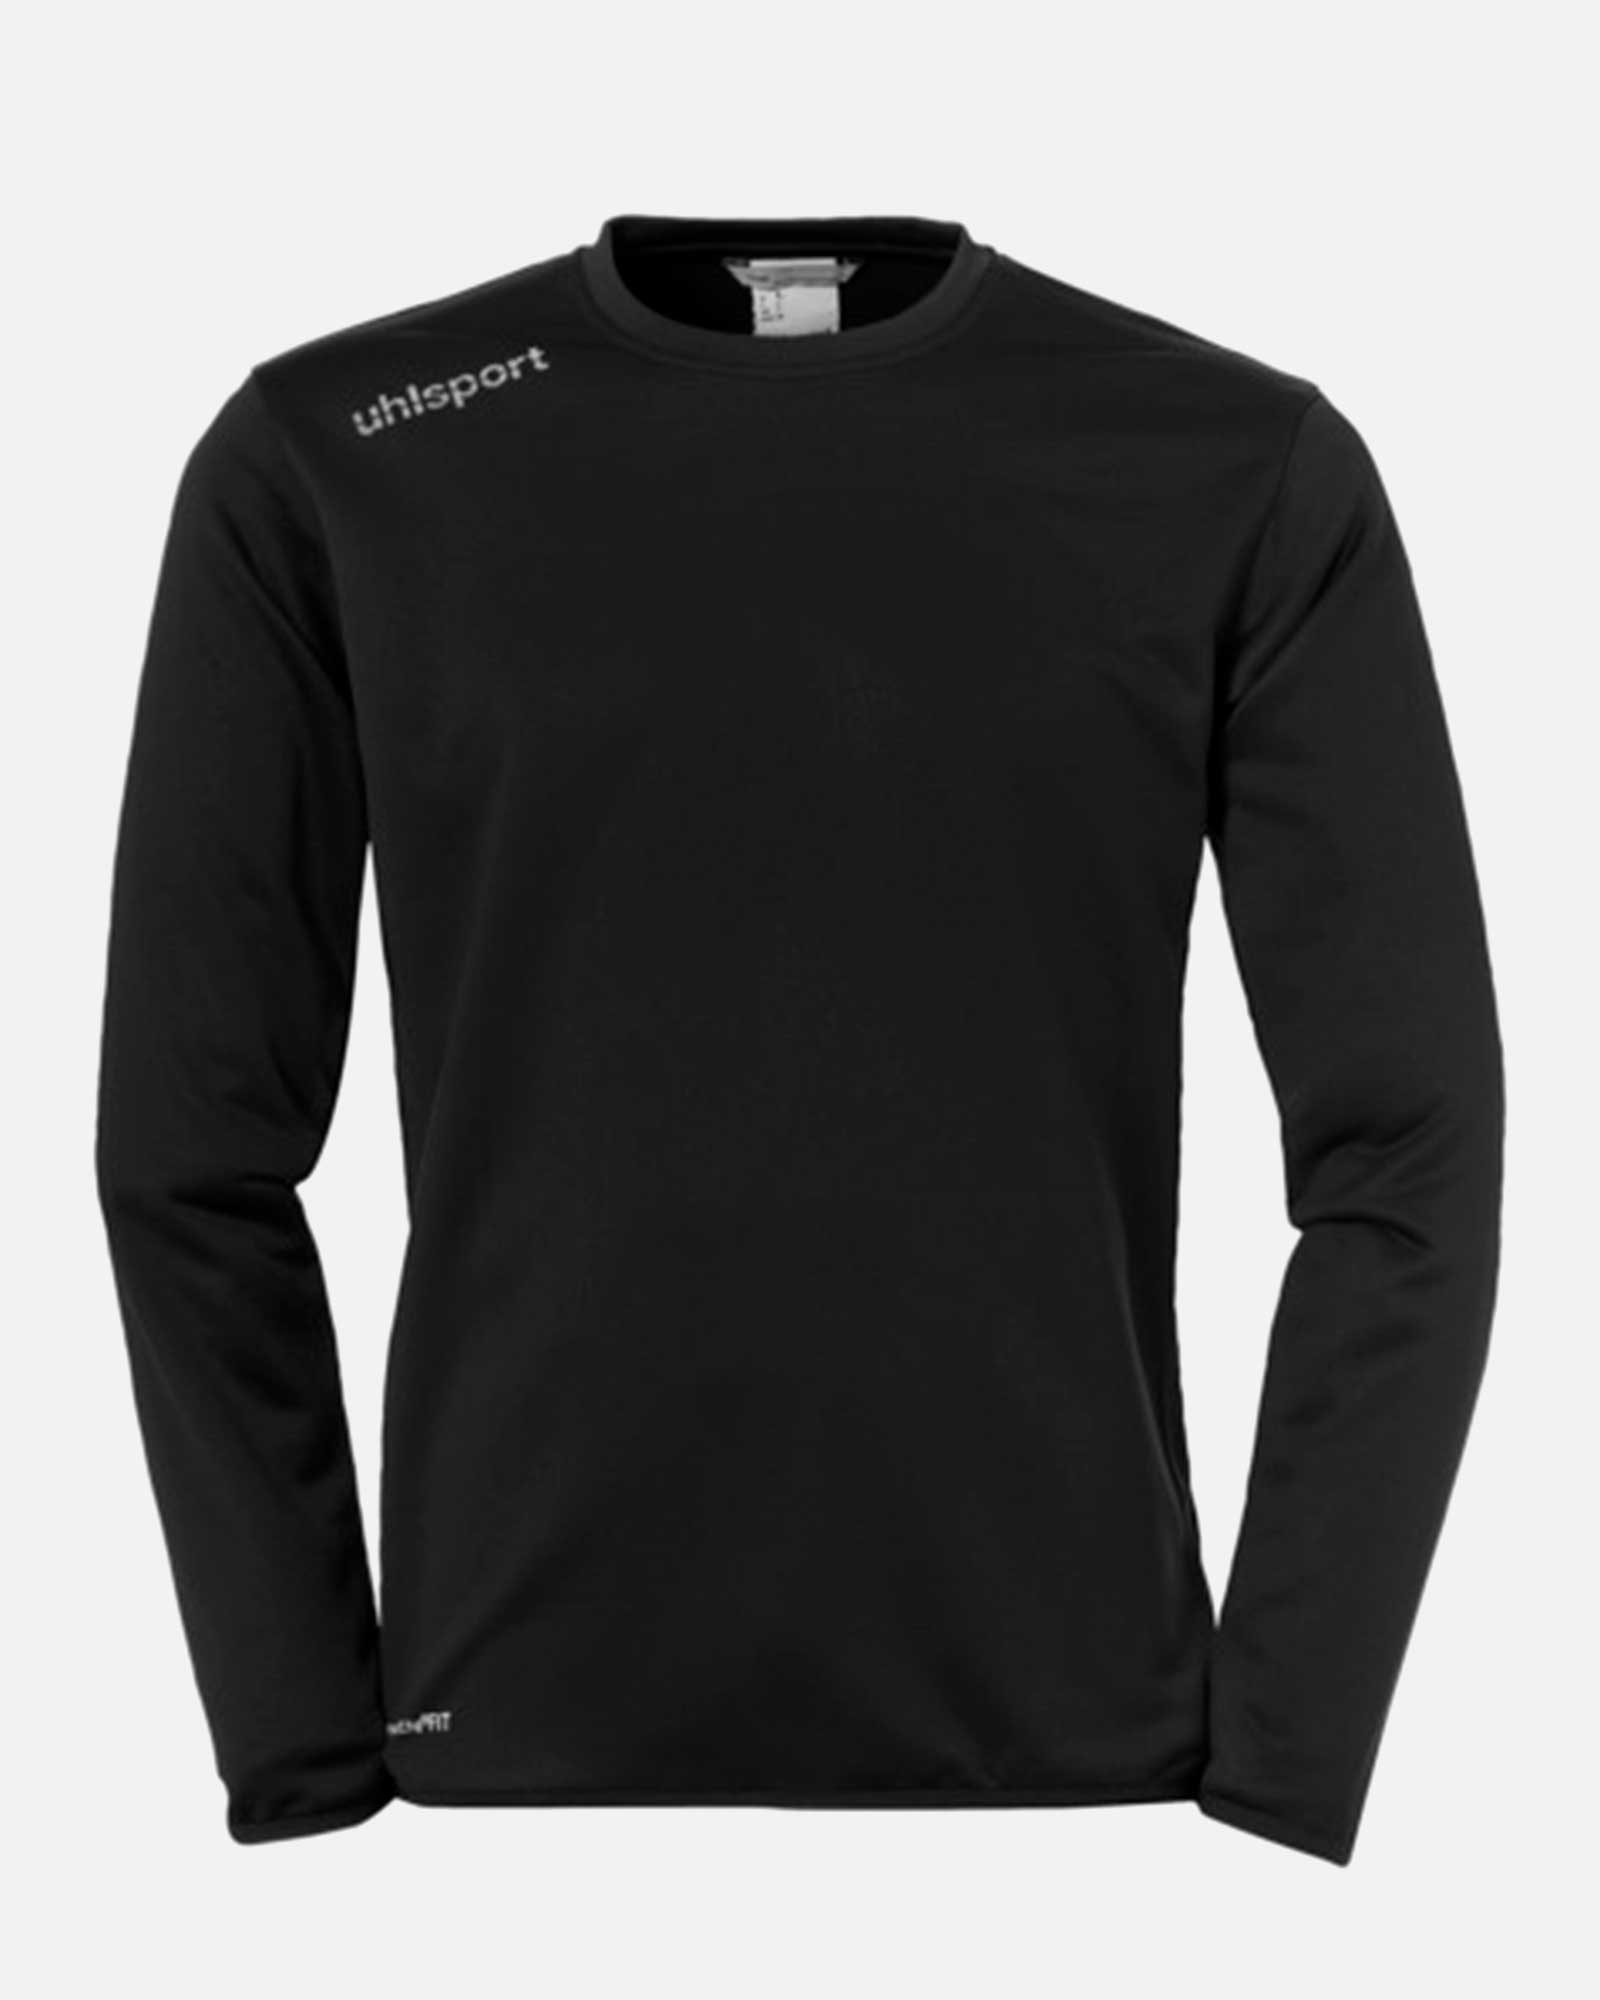 Camiseta Uhlsport Essential TR Top - Fútbol Factory